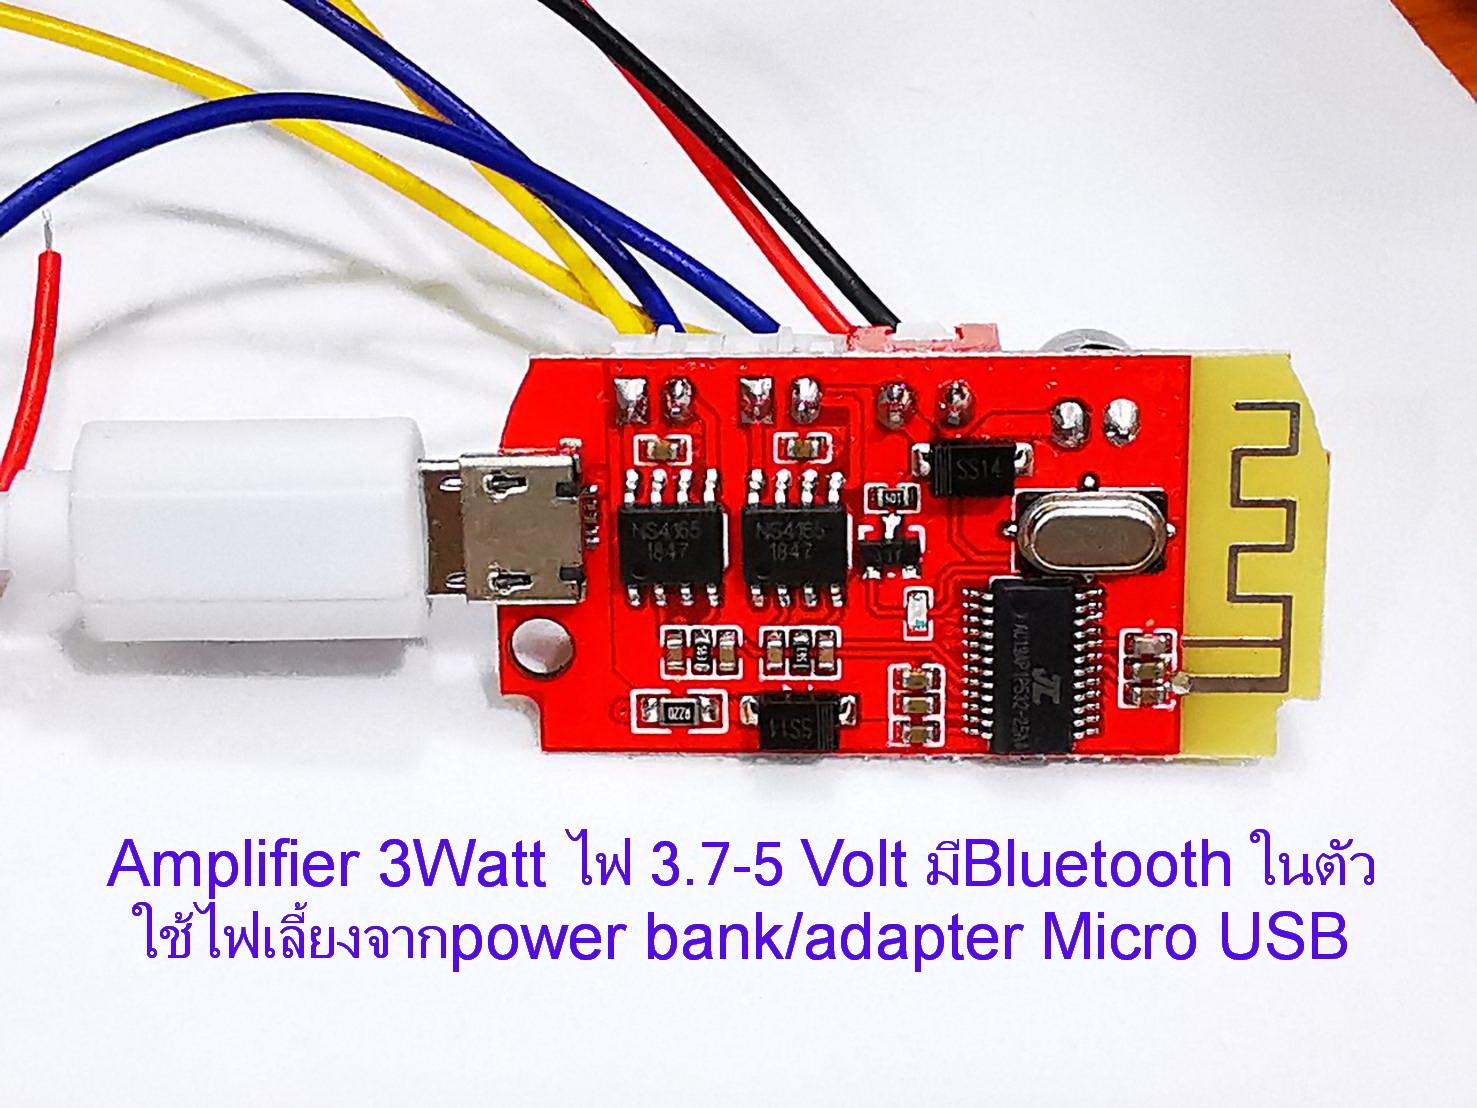 บอร์ดเครื่องขยายเสียงพร้อมBluetooth 2CH 3+3Watt ใชไฟ 3.7V.หรือ 5 Volt (Power bank หรือ Adapter Micro)สำหรับงาน DIY Digital Amplifier Board 2 Channel 3+3 Watt with Bluetooth